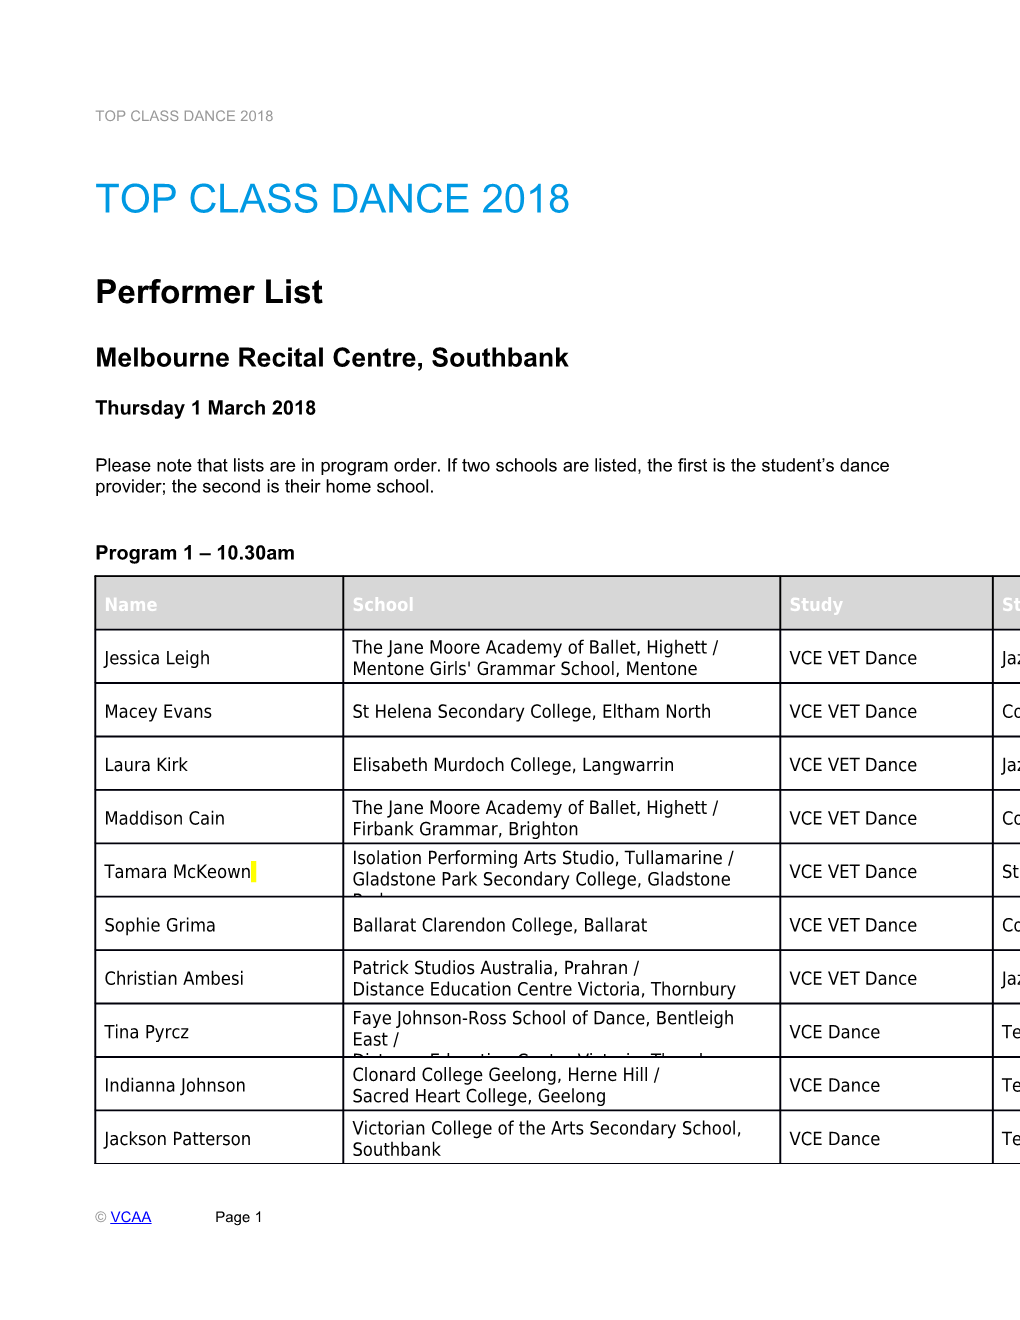 Top Class Dance 2018